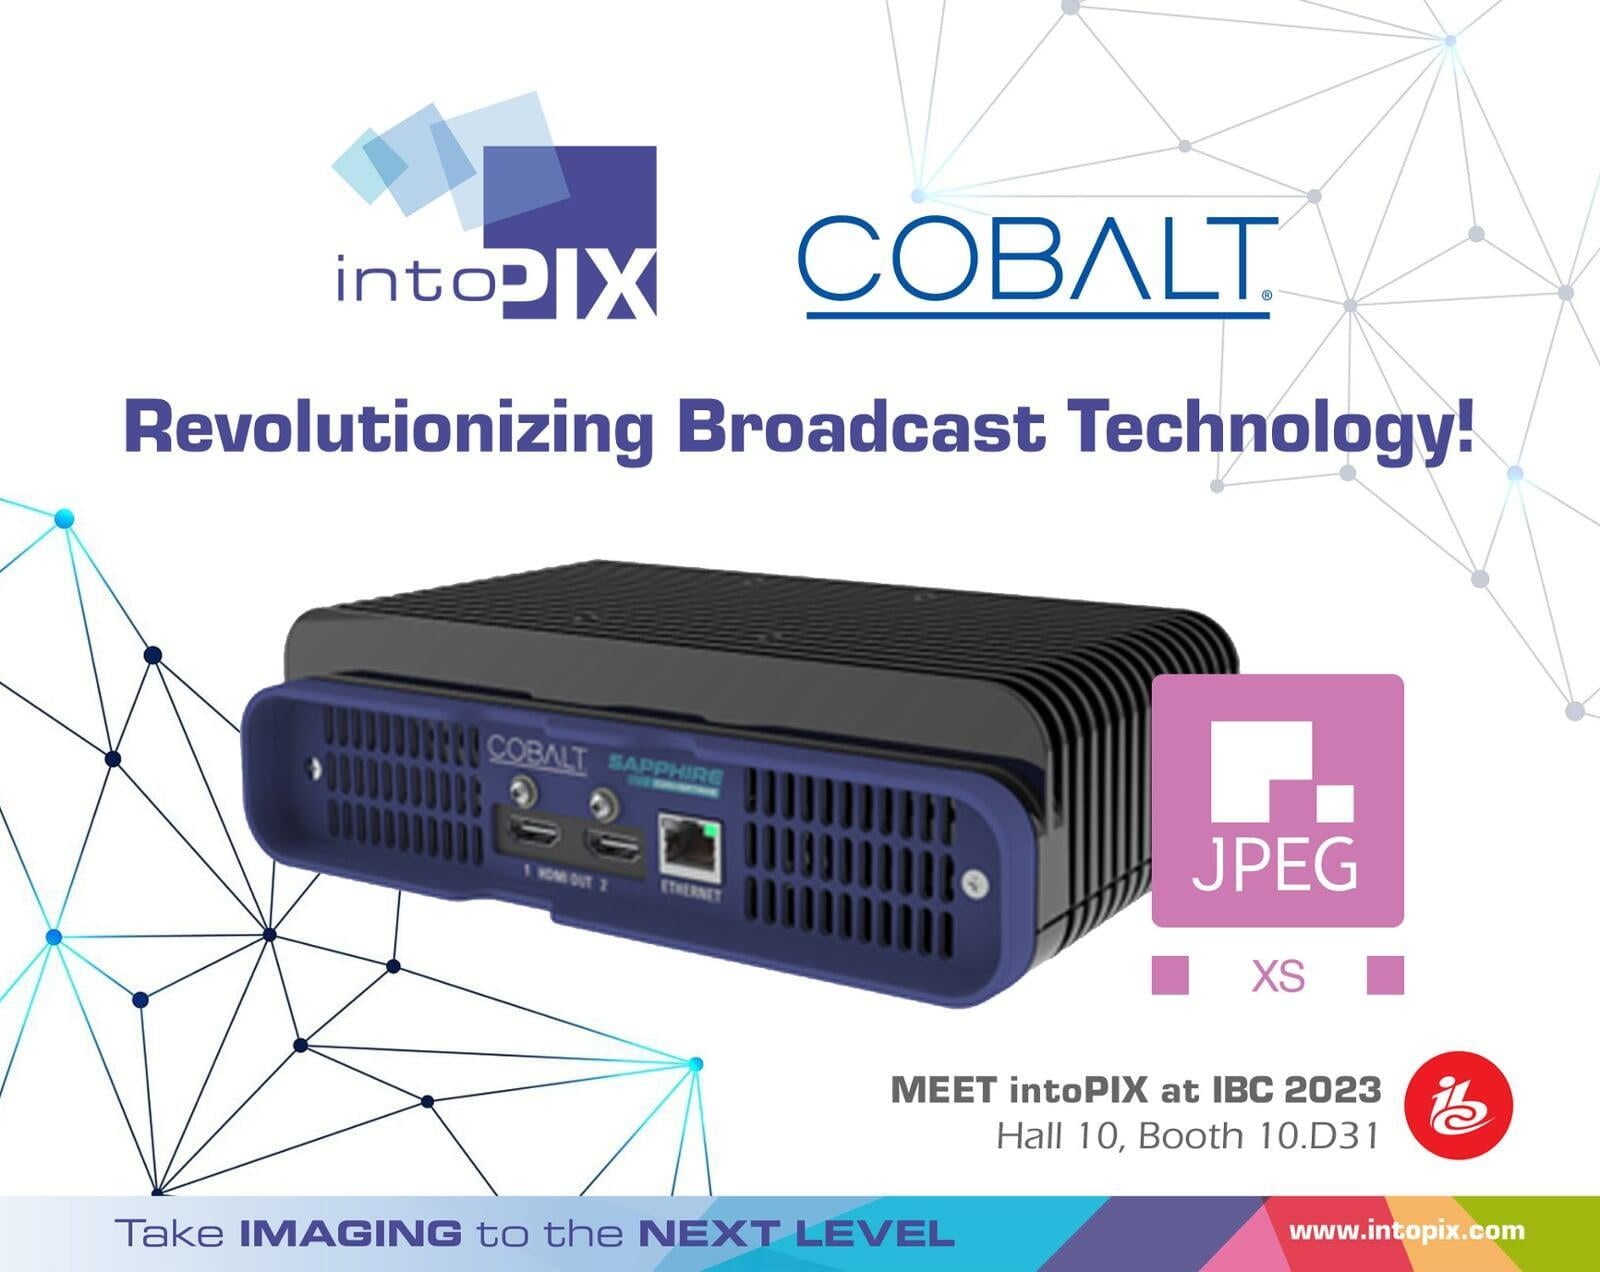 intoPIX Cobalt 揭開了內容交付的未來 JPEG XS：介紹藍寶石迷你轉換器和藍寶石openGear卡 powered by intoPIX 科技